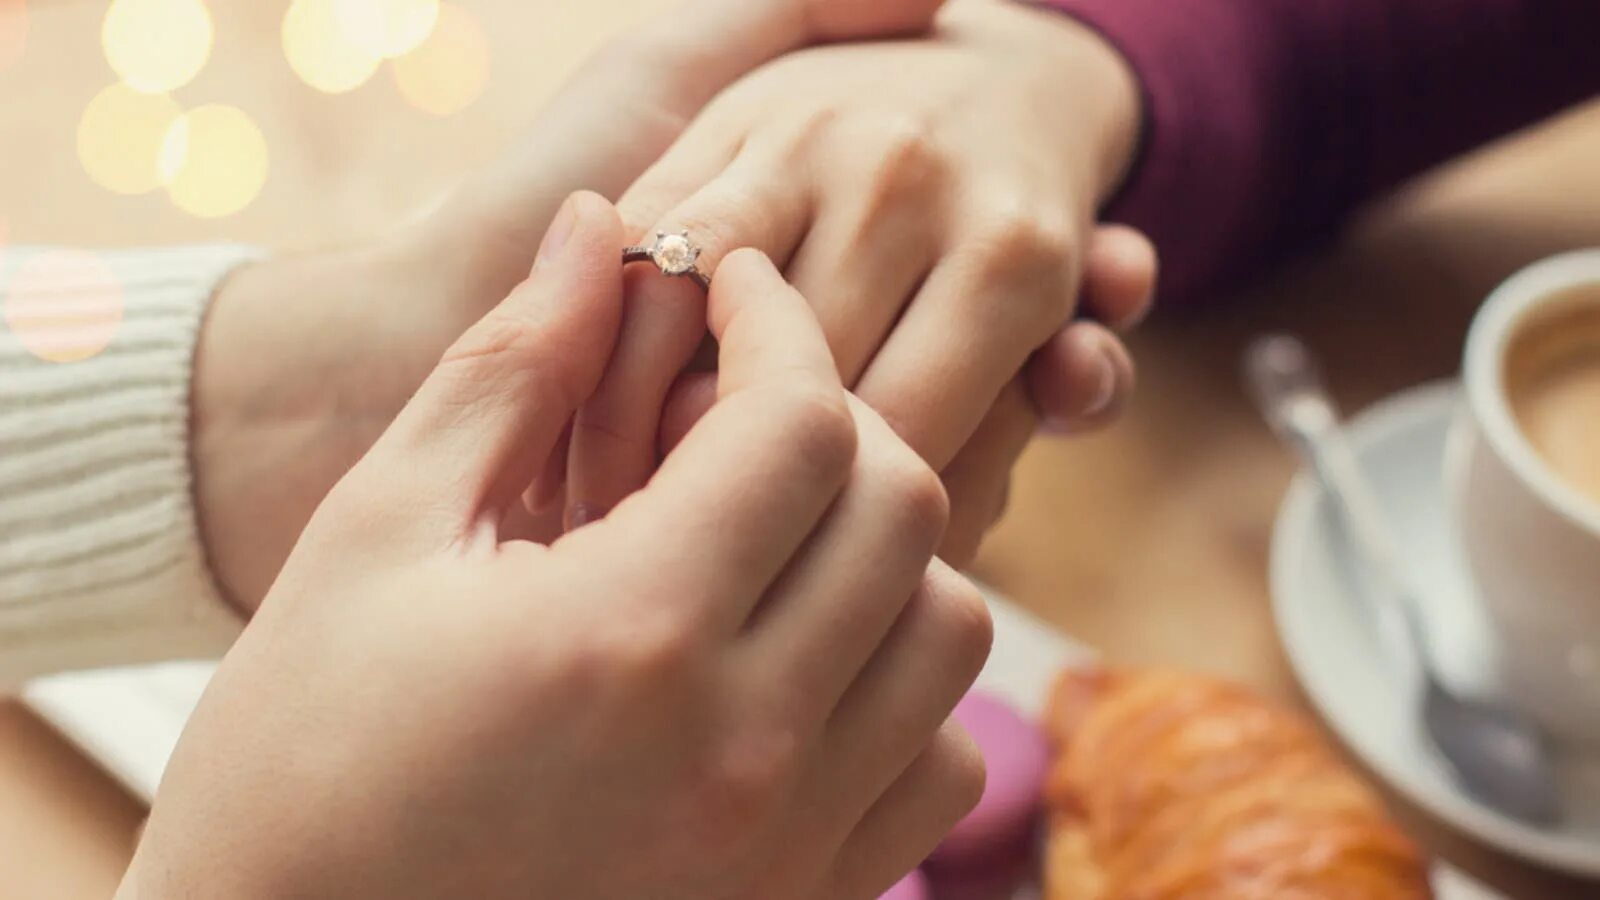 Приснилось кольцо мужа. Предложение в кафе кольцо. Рассматривает кольцо на пальце подруги. Помолвка. Свекор обои.